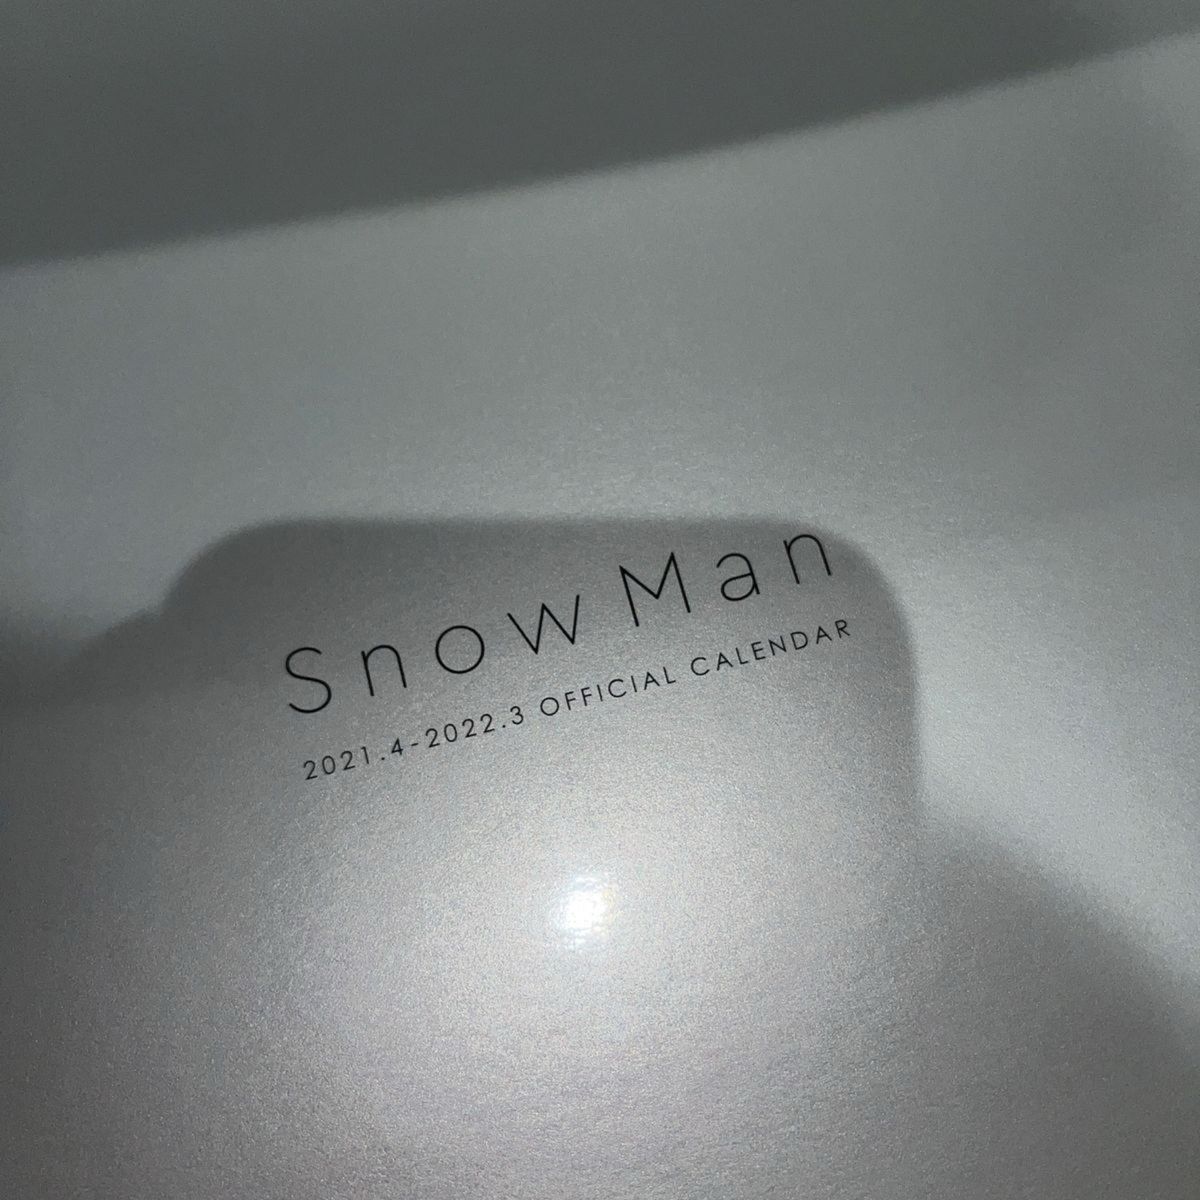 ※正規品SnowManカレンダー 2021.4-2022.3 ※写真集のみ (カレンダー部分なし)箱無し